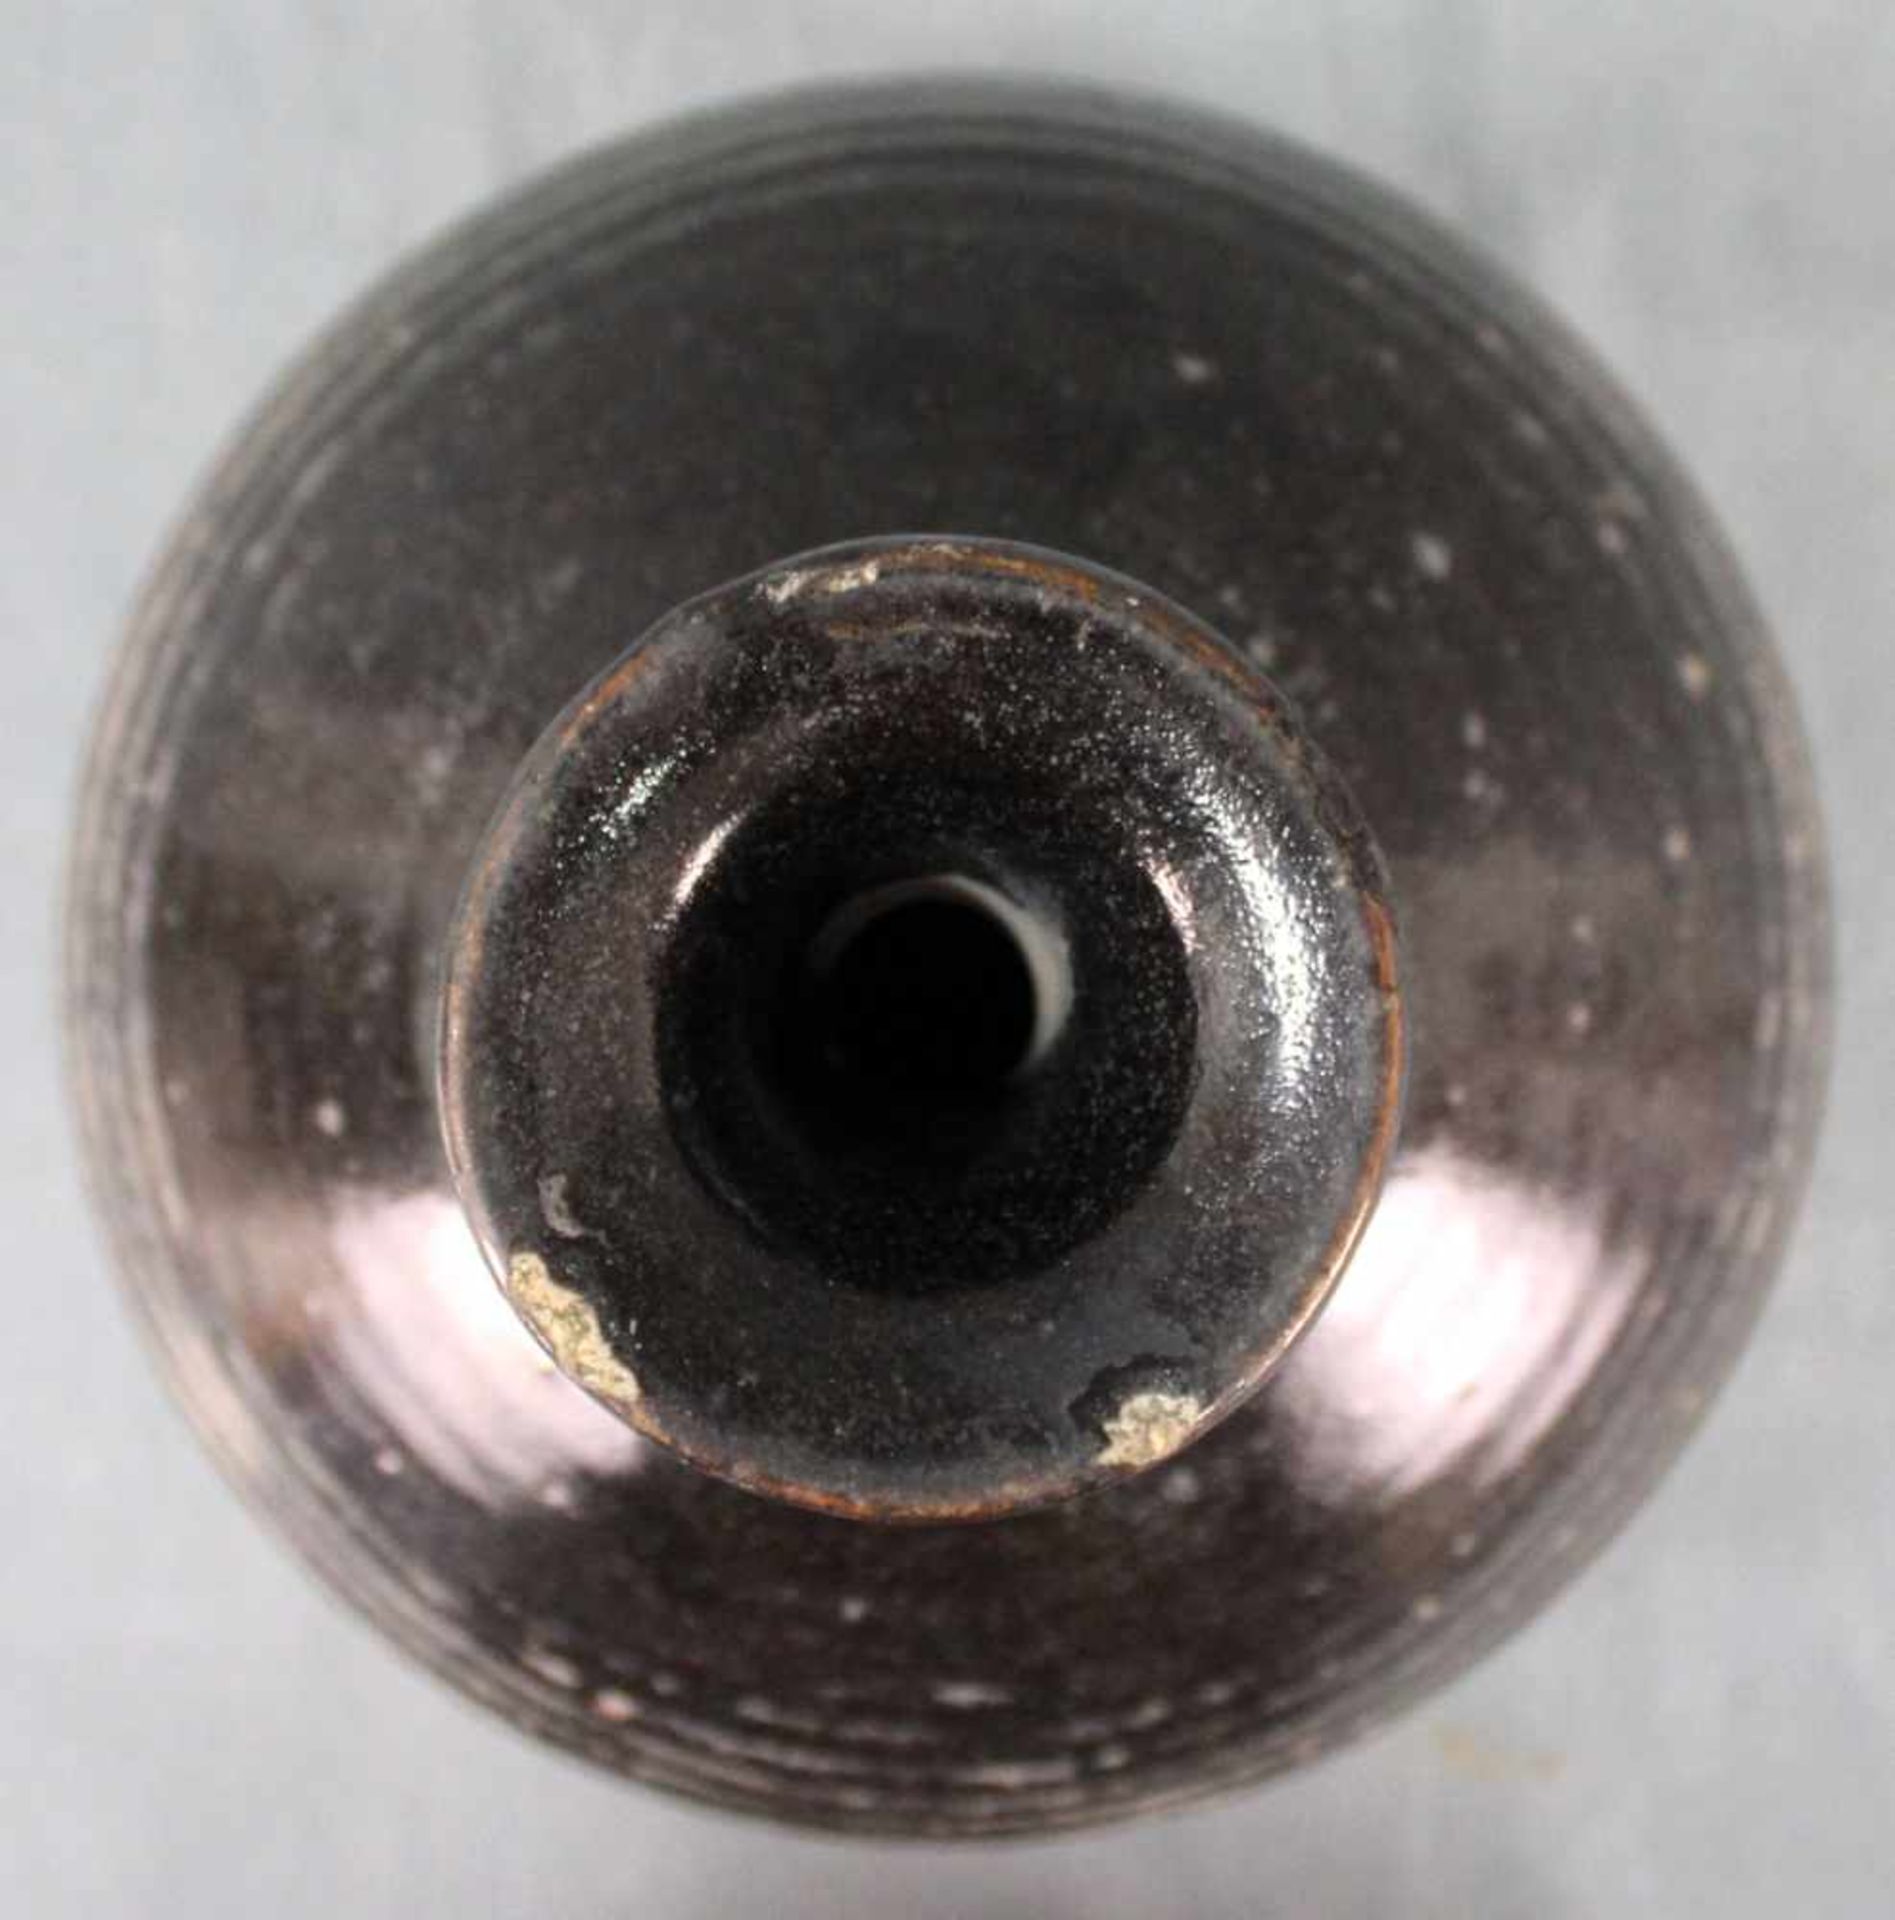 Bauchige Vase. Vorratsgefäß. Steingut. Schwarze Glasur. Wohl Zentralasien, antik.34 cm hoch.Vase. - Image 4 of 7